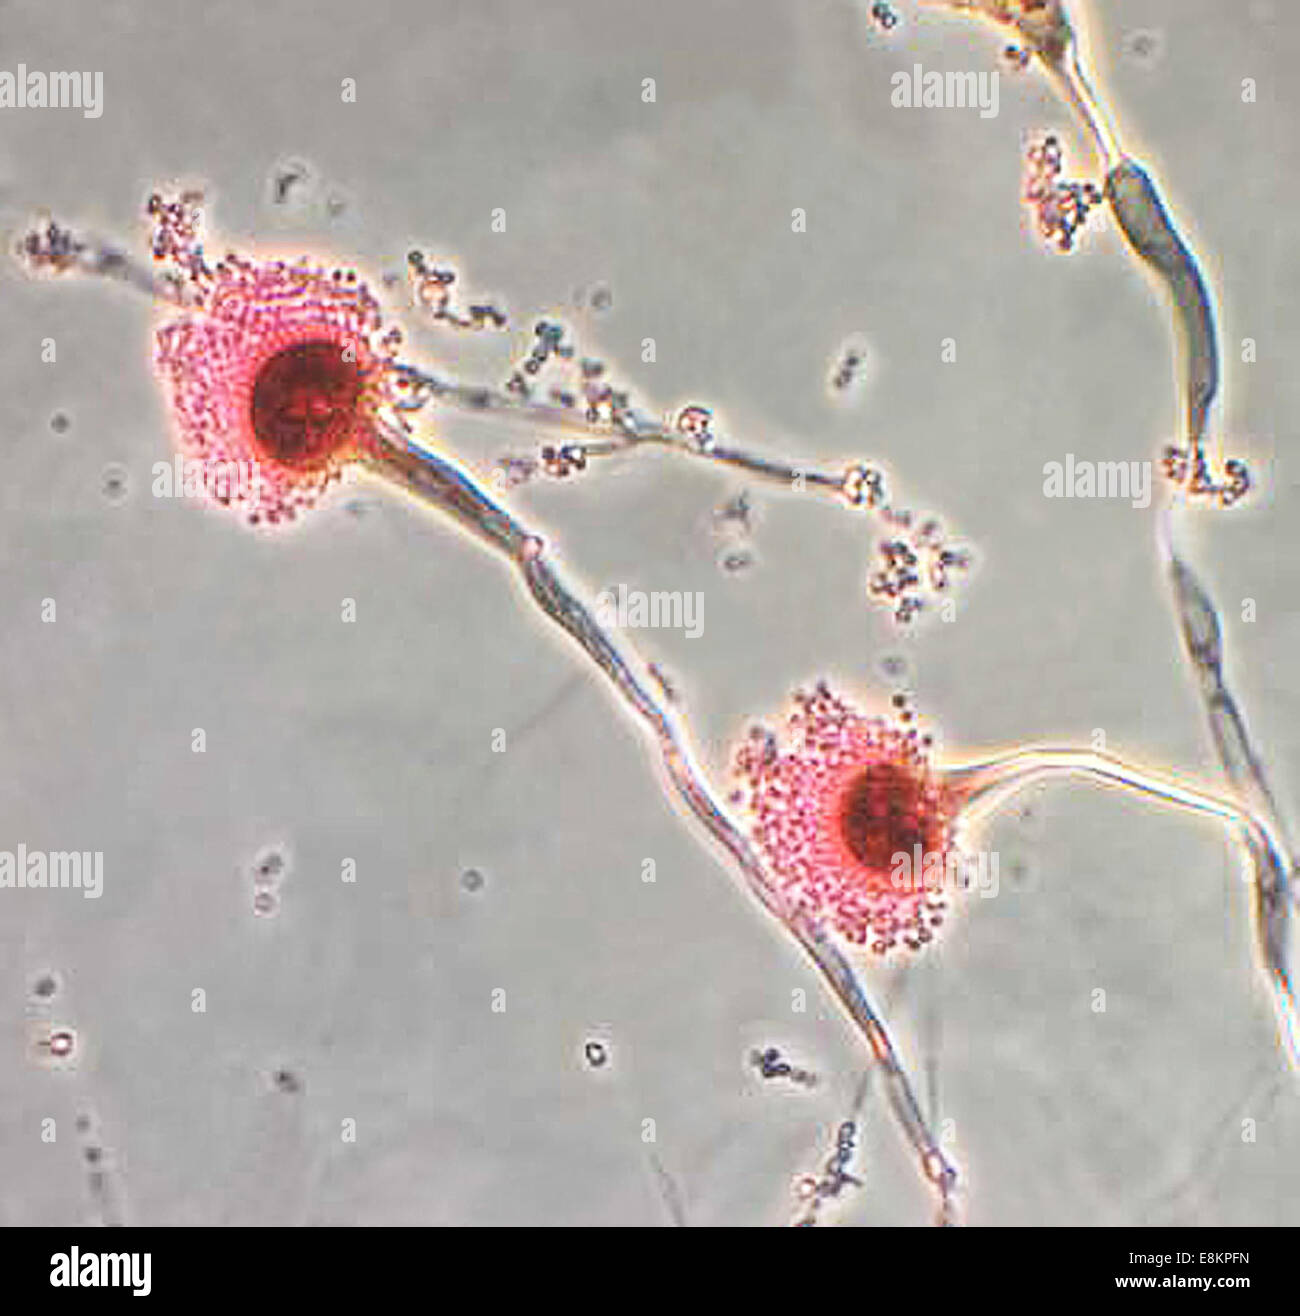 Diese Mikrophotographie zeigt einige der Ultrastrukturforschung Morphologie von pilzlichen Organismus Aspergillus Fumigatus der angezeigten Stockfoto